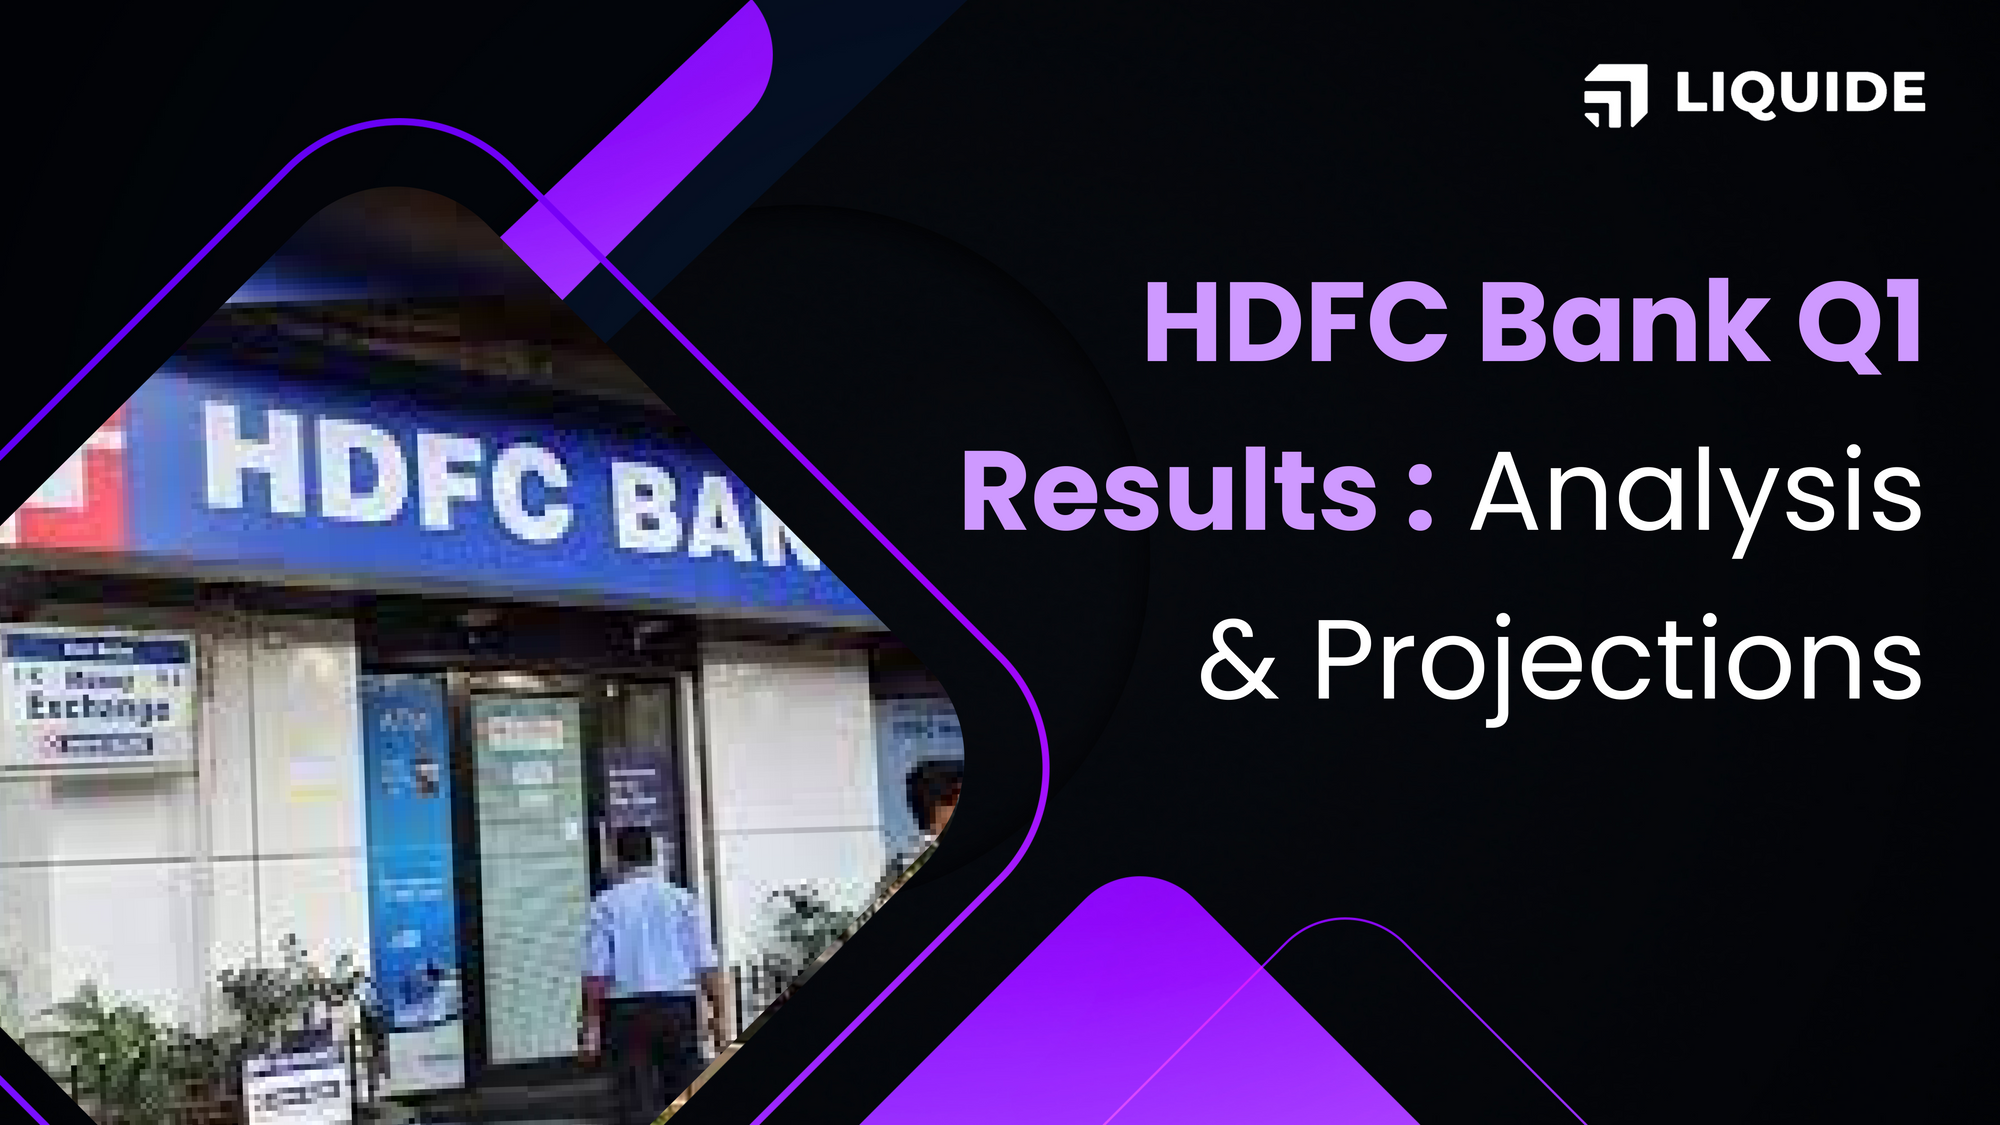 Hdfc bank Q1 results, HDFC bank, HDFC bank financials, liquide